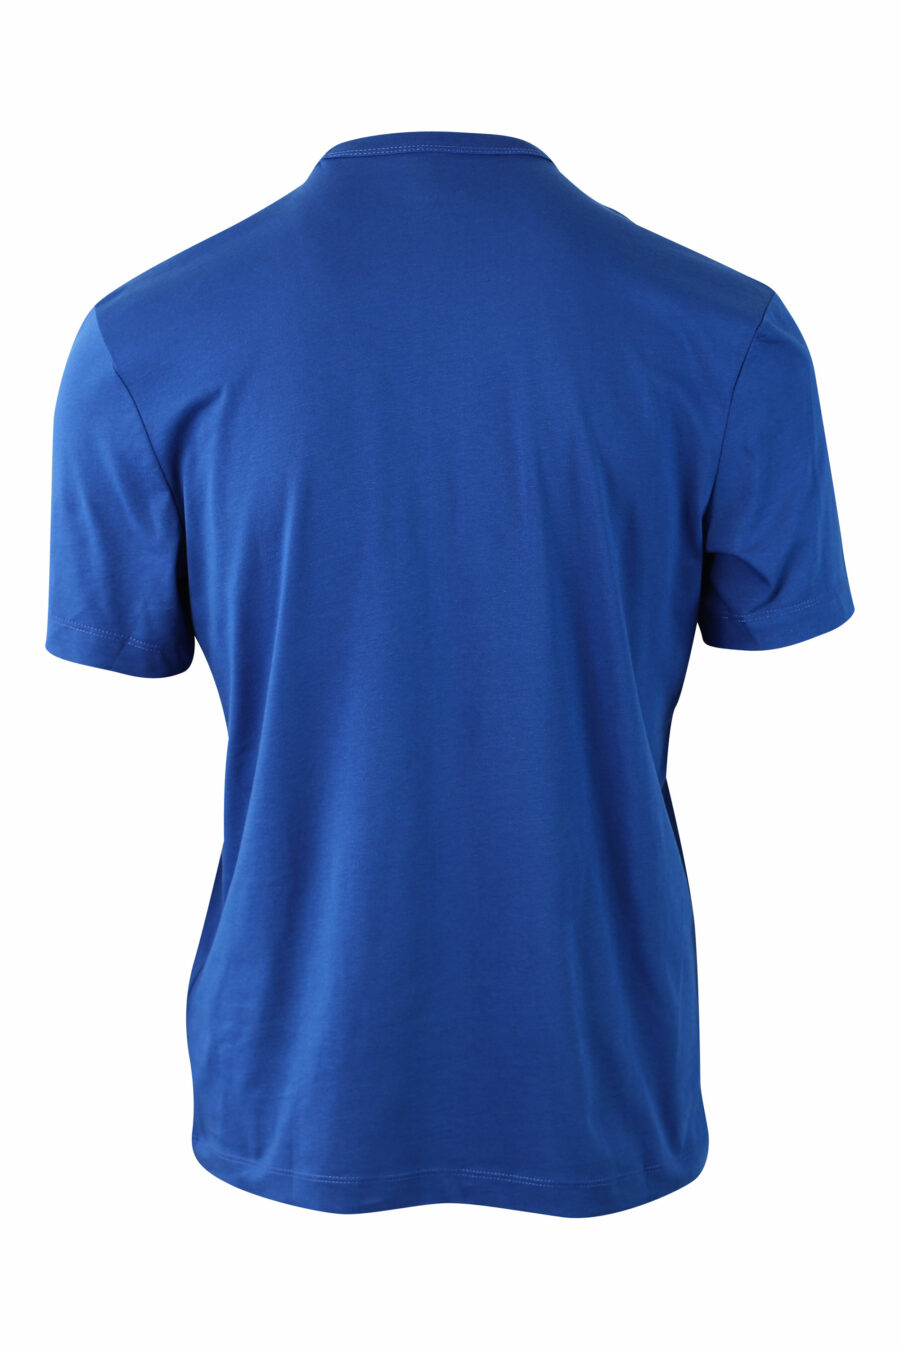 T-shirt azul com escudo com mini logótipo - IMG 0006